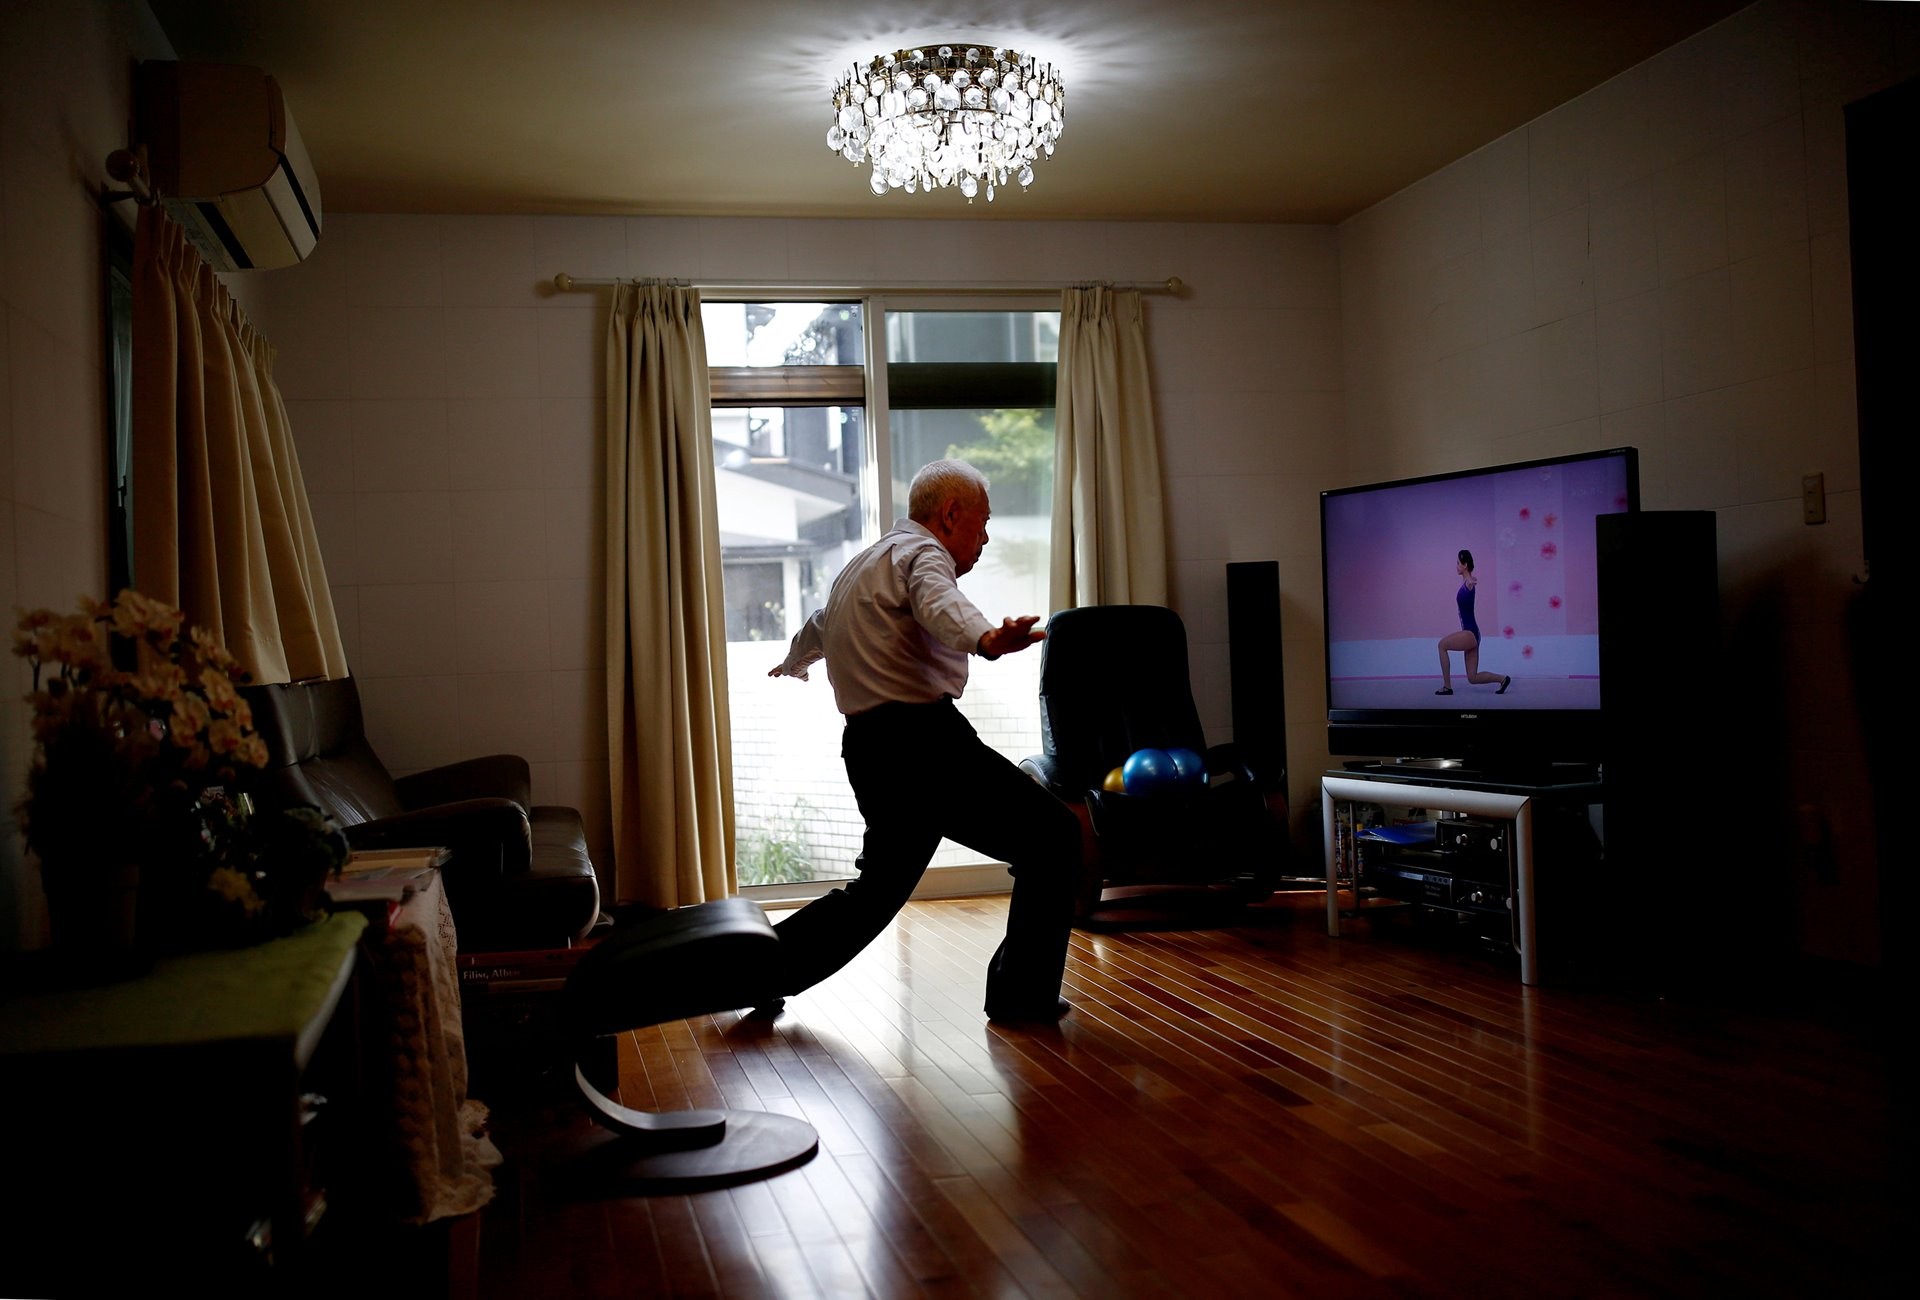 3 место в категории Спорт, фотосерия, 2020. Японские ветераны регби. 86-летний Рюичи Нагаяма делает физические упражнения дома в Токио. Автор Ким Кён Хун